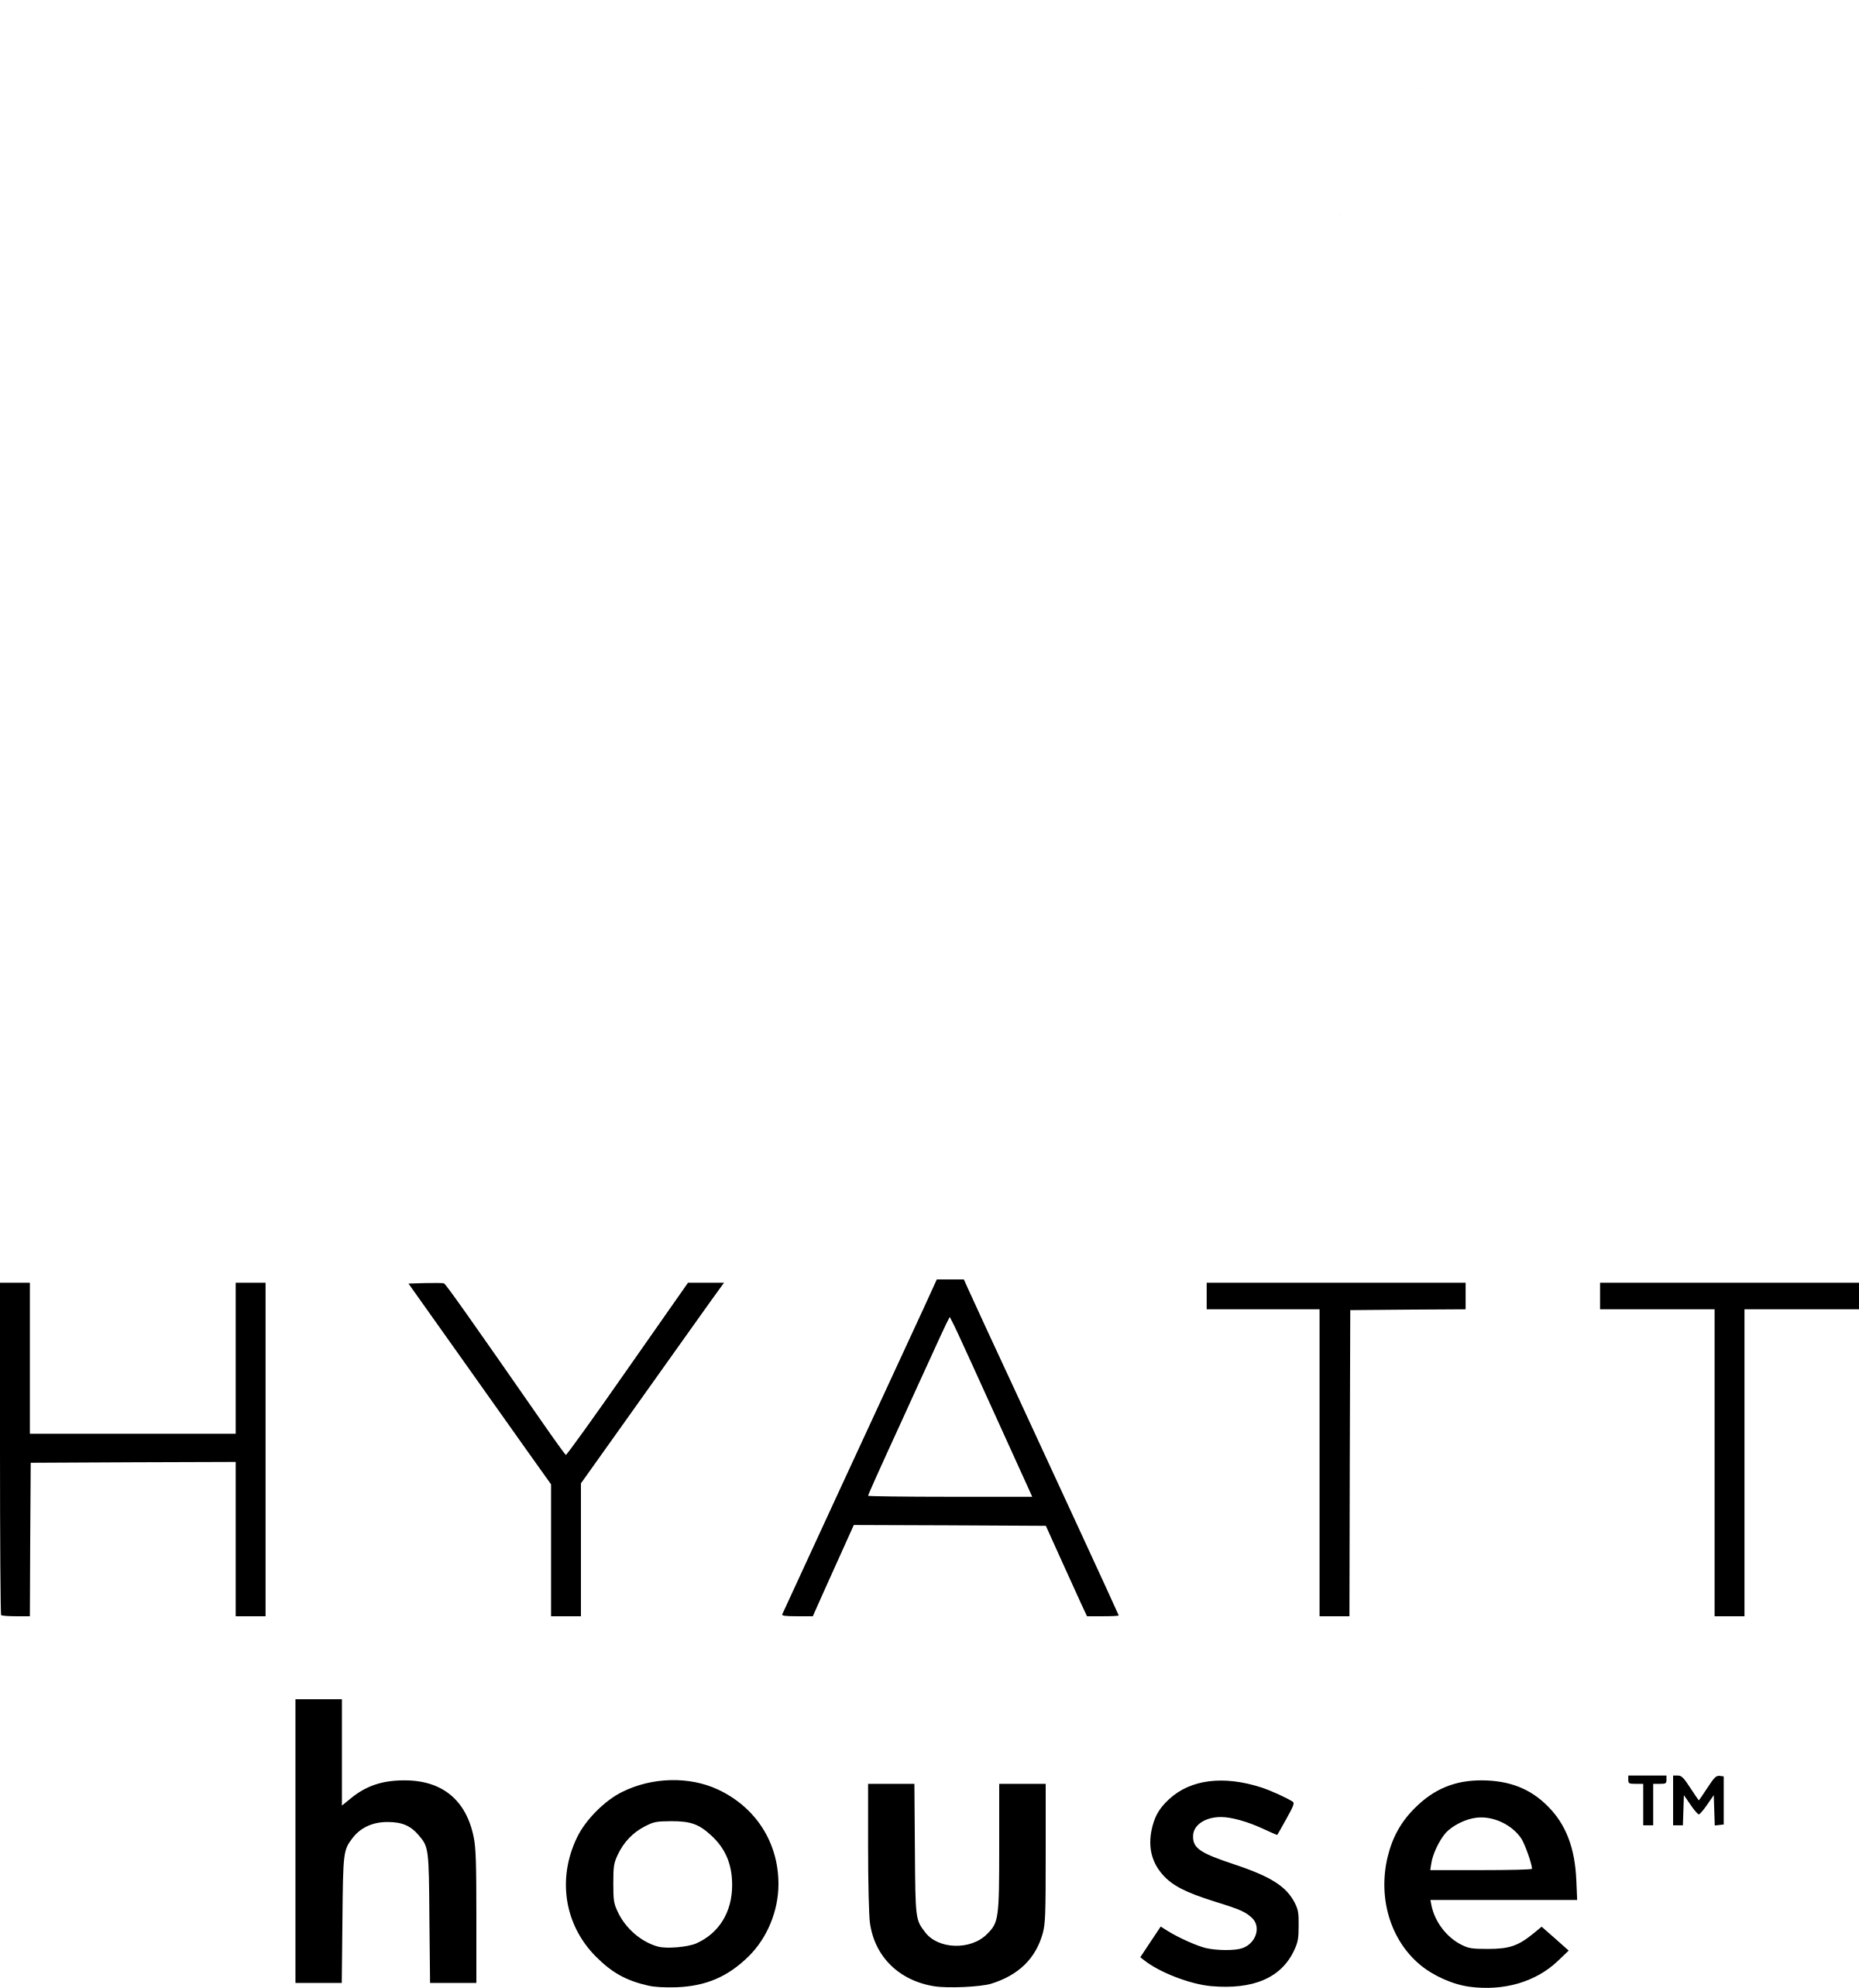 Hyatt House Logo Black And White - Hyatt House Logo Png (2400x2567), Png Download